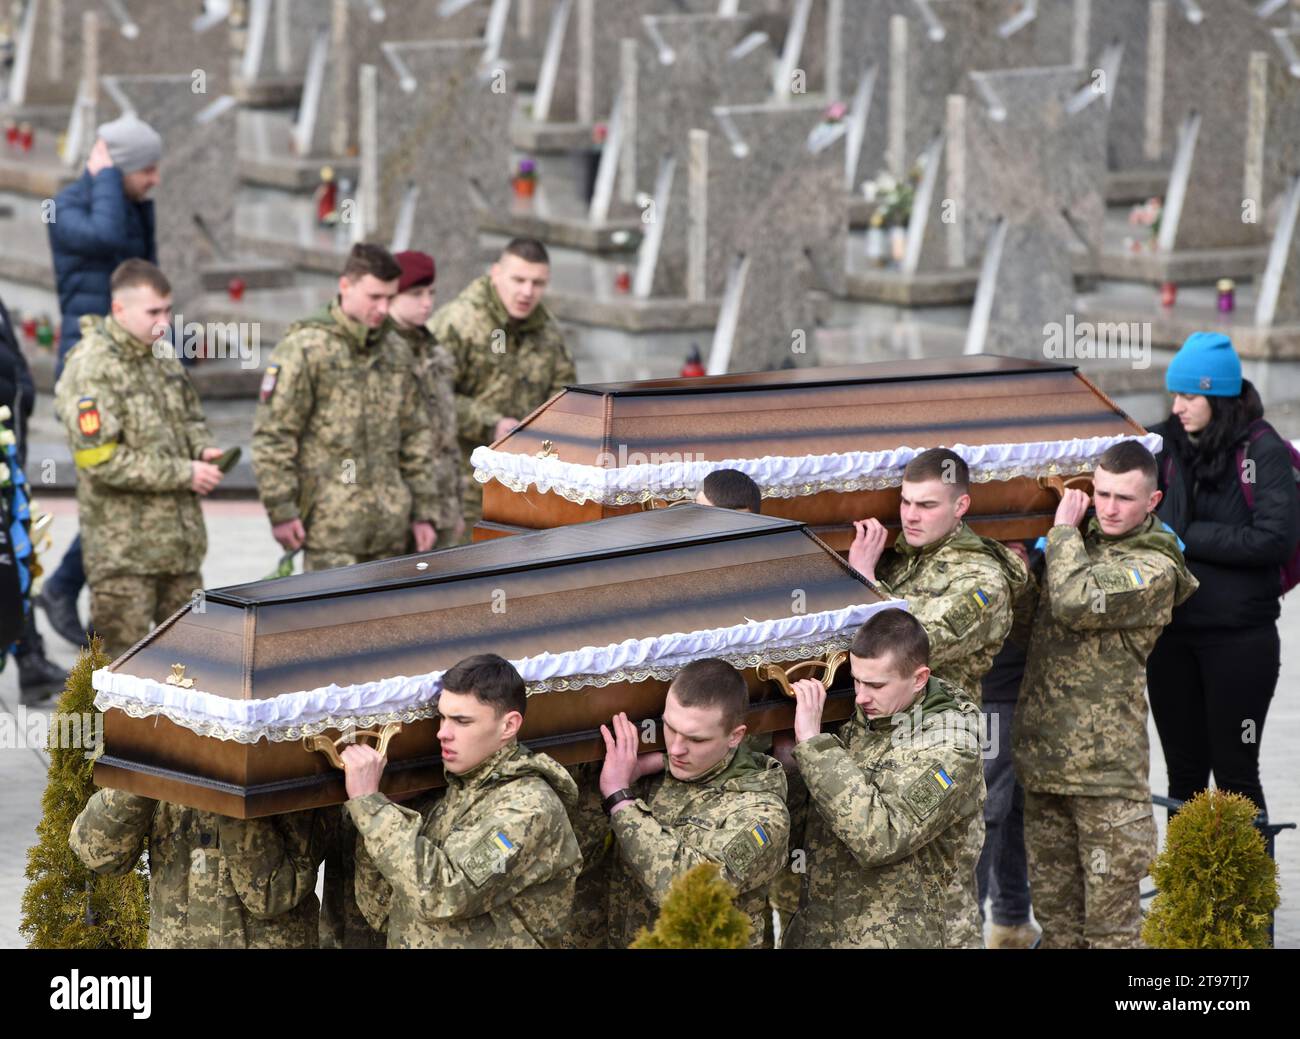 Lviv, Ukraine - 9. März 2022: Soldaten tragen Särge bei Beerdigungen ukrainischer Soldaten, die während der russischen Invasion in die Ukraine in Lychaki getötet wurden Stockfoto